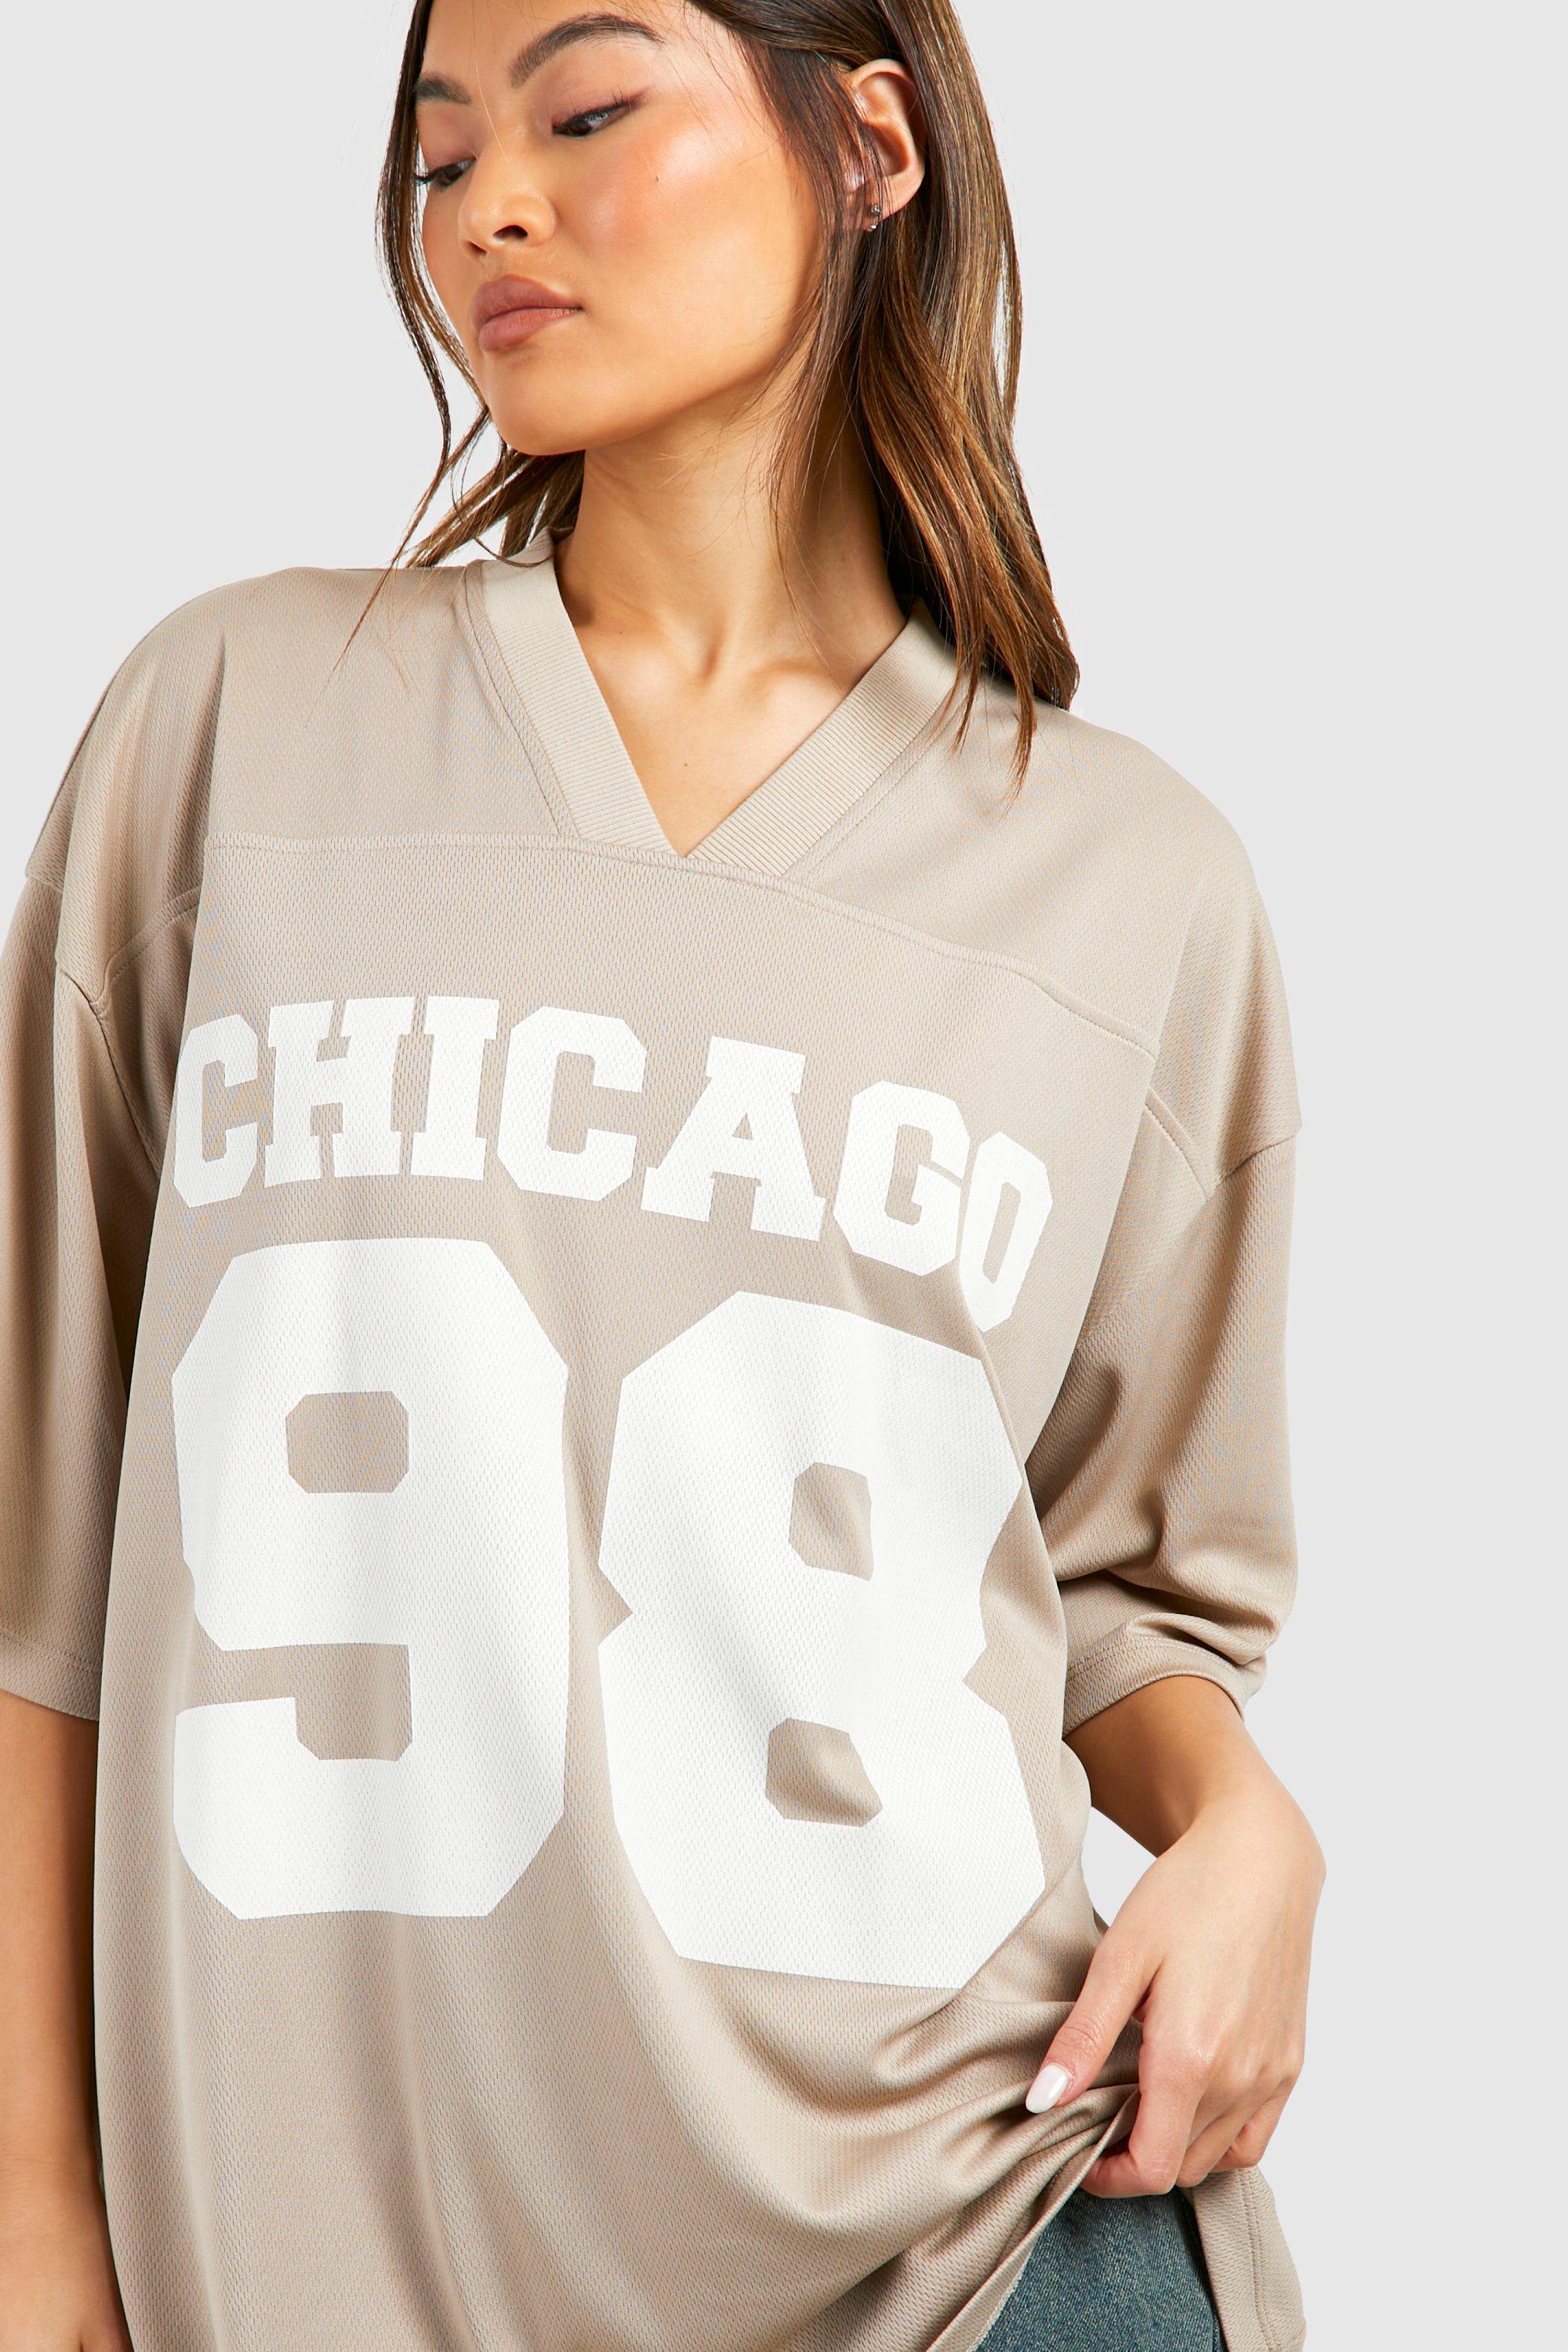 Chicago 98 Slogan Airtex Mesh Oversized T-shirt | boohoo